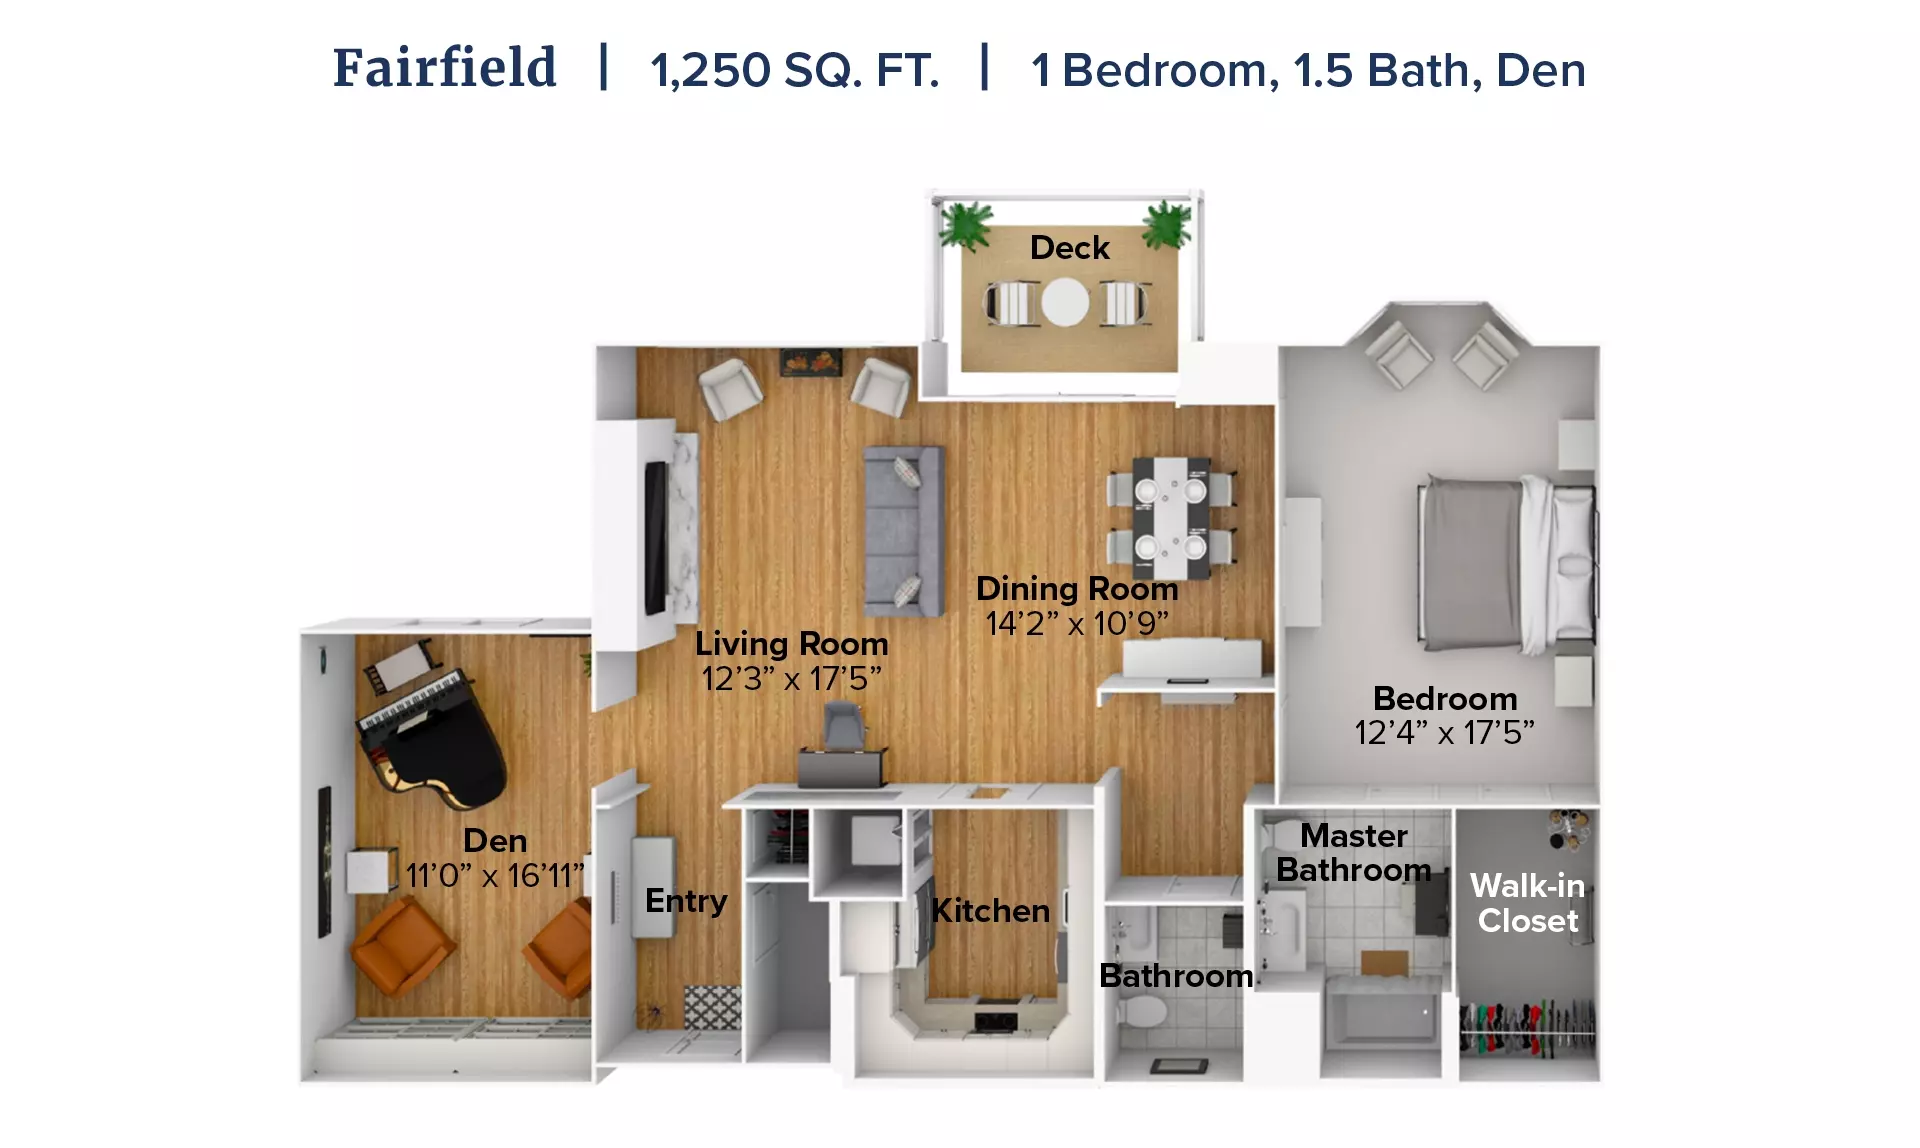 Fairfield floor plan